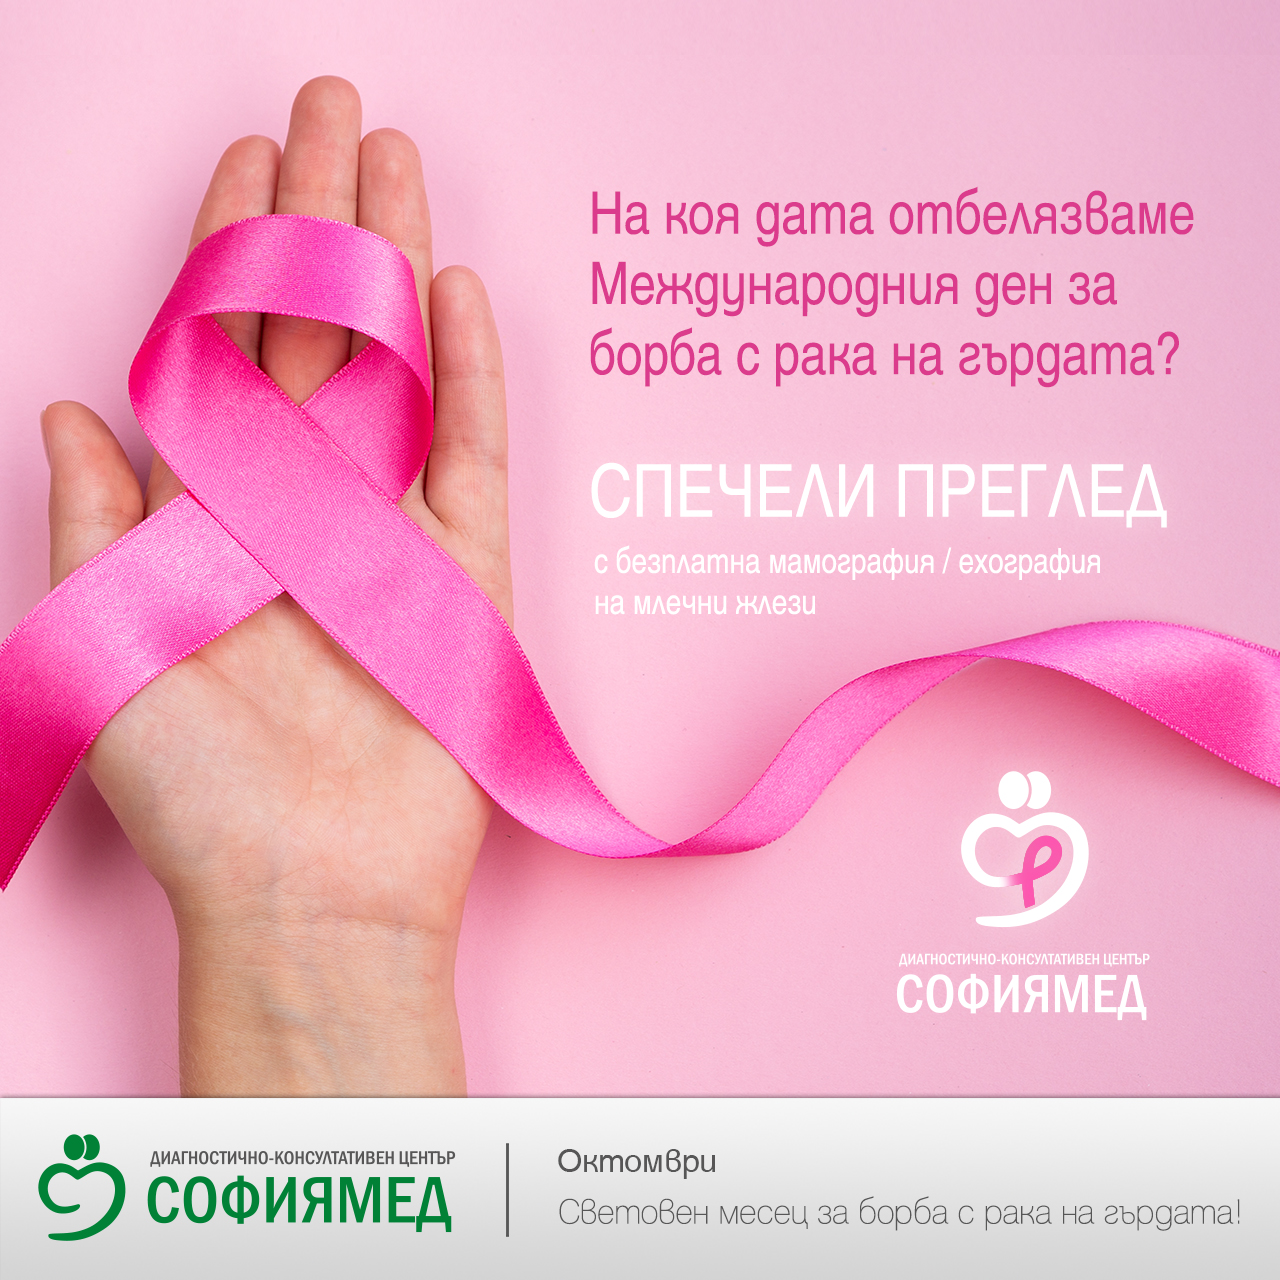 Ваучер за безплатен преглед и мамография или ехография на млечни жлези в ДКЦ „Софиямед“ по случай Световния ден за борба с рака на гърдата